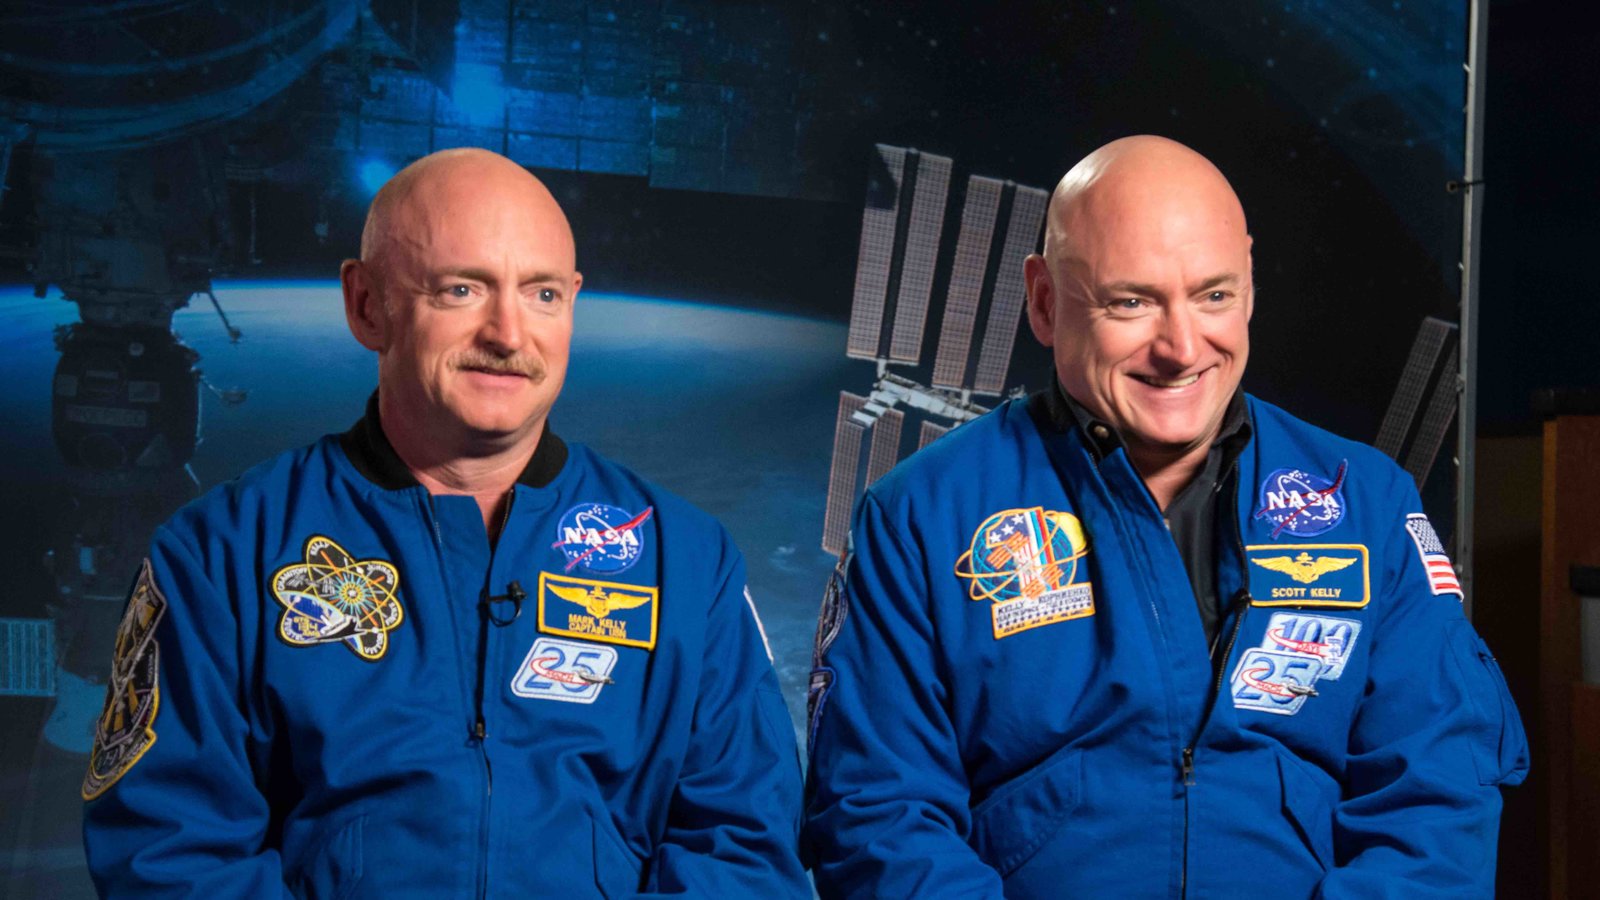 DDR-astronautes-Kelly